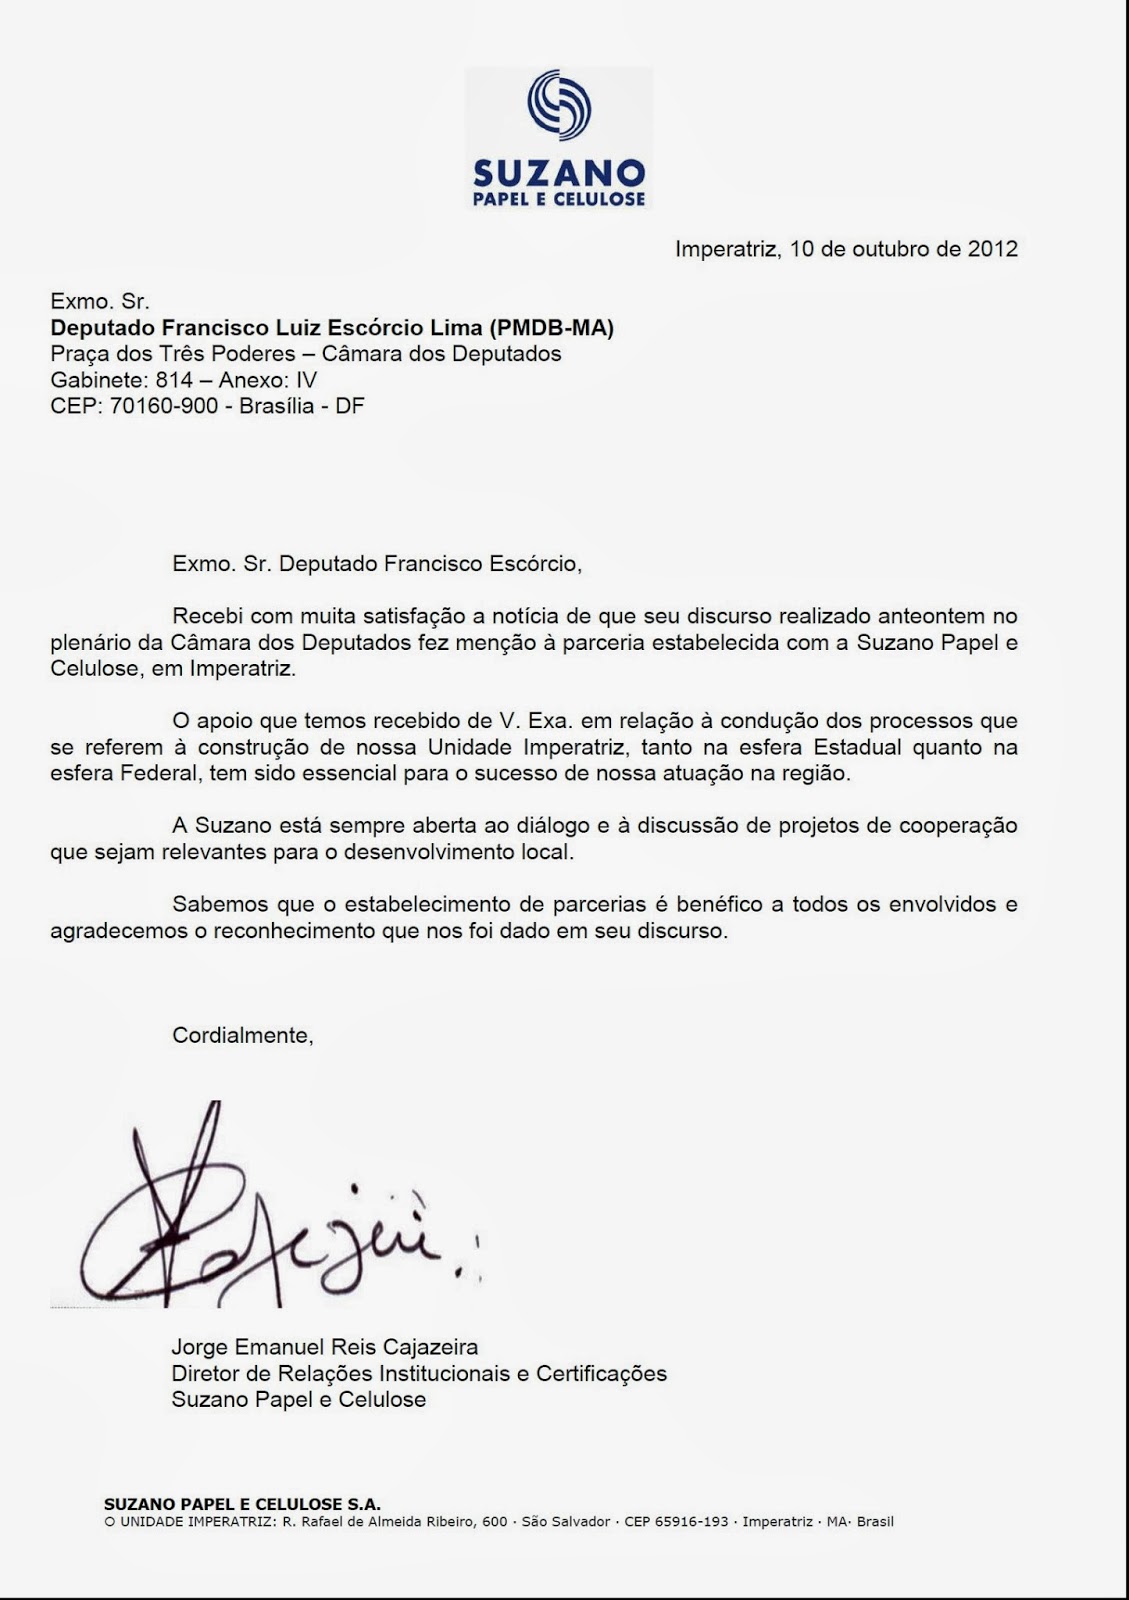 Chiquinho Escórcio: Suzano envia carta de agradecimento ao 